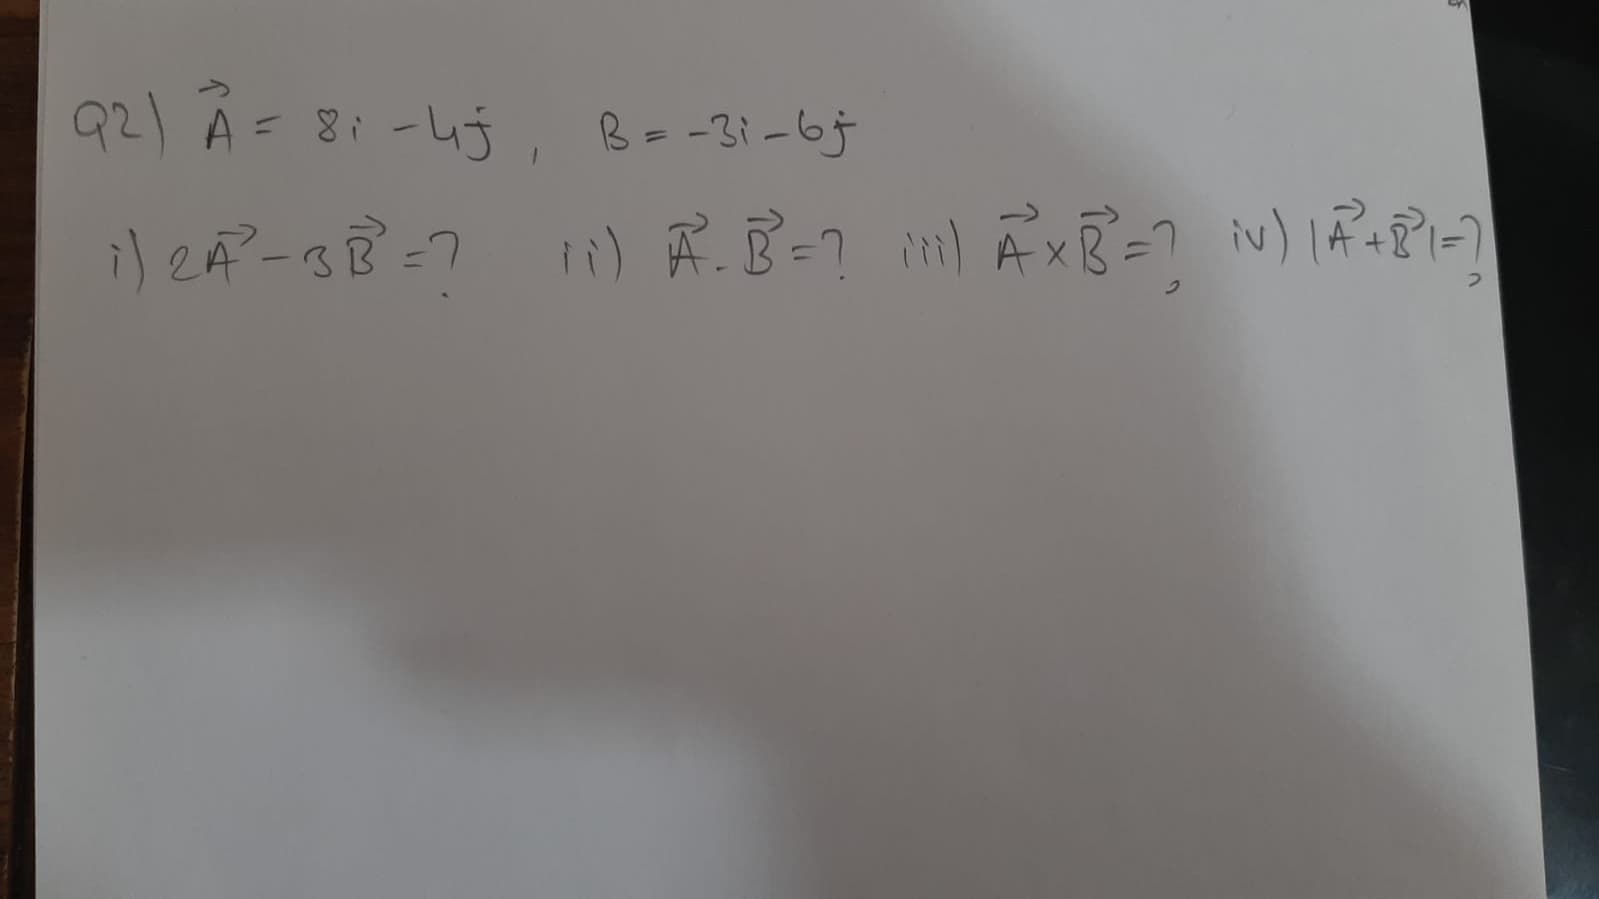 92) A
-4j, B=-3i-6j
= 8i
